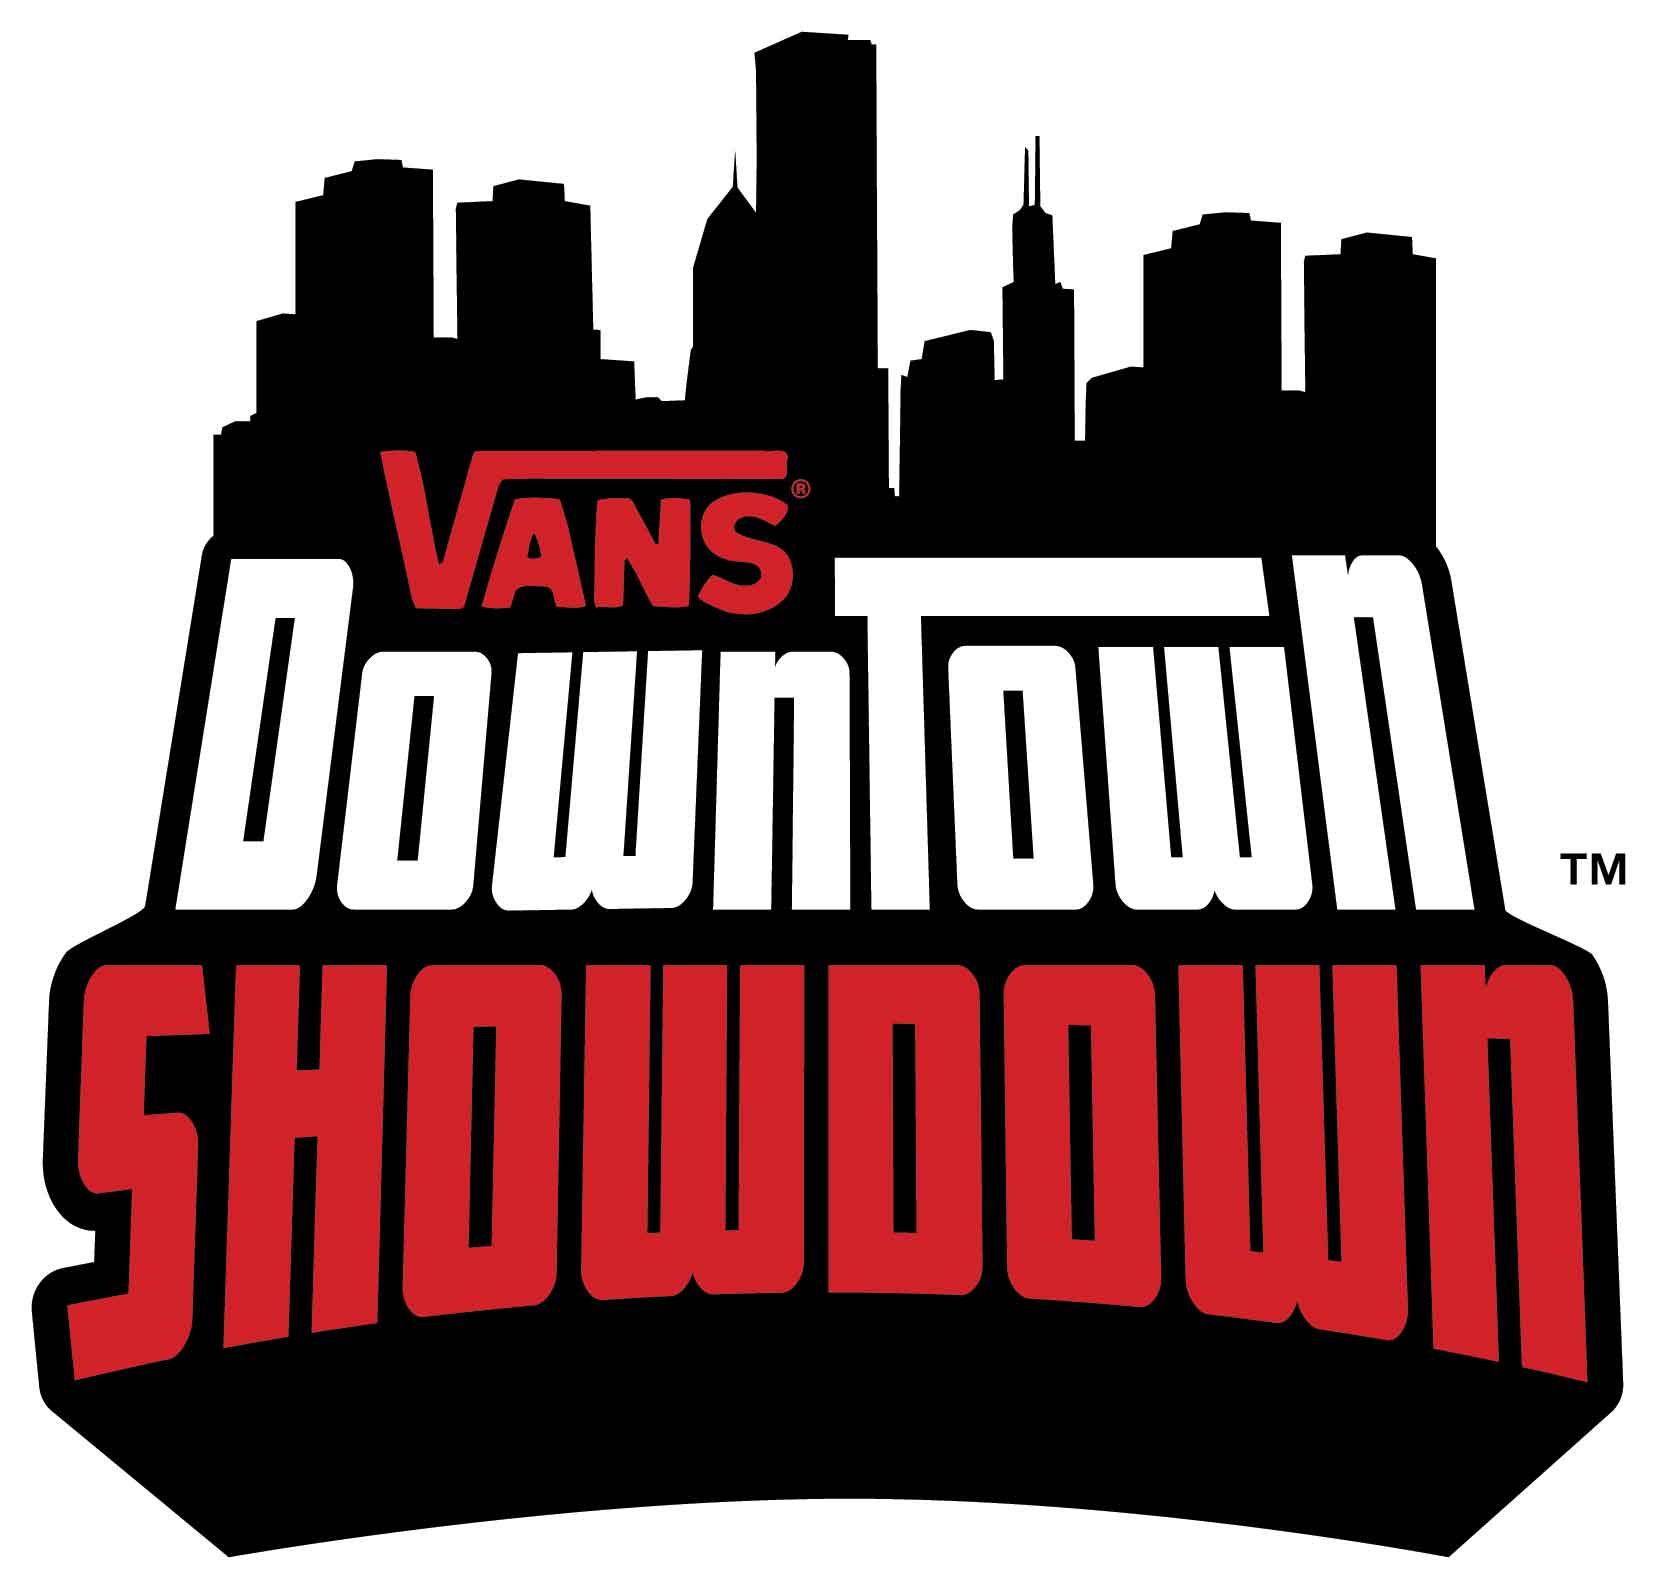 Vans Skate Logo - 2008 Vans Downtown Showdown | TransWorld SKATEboarding